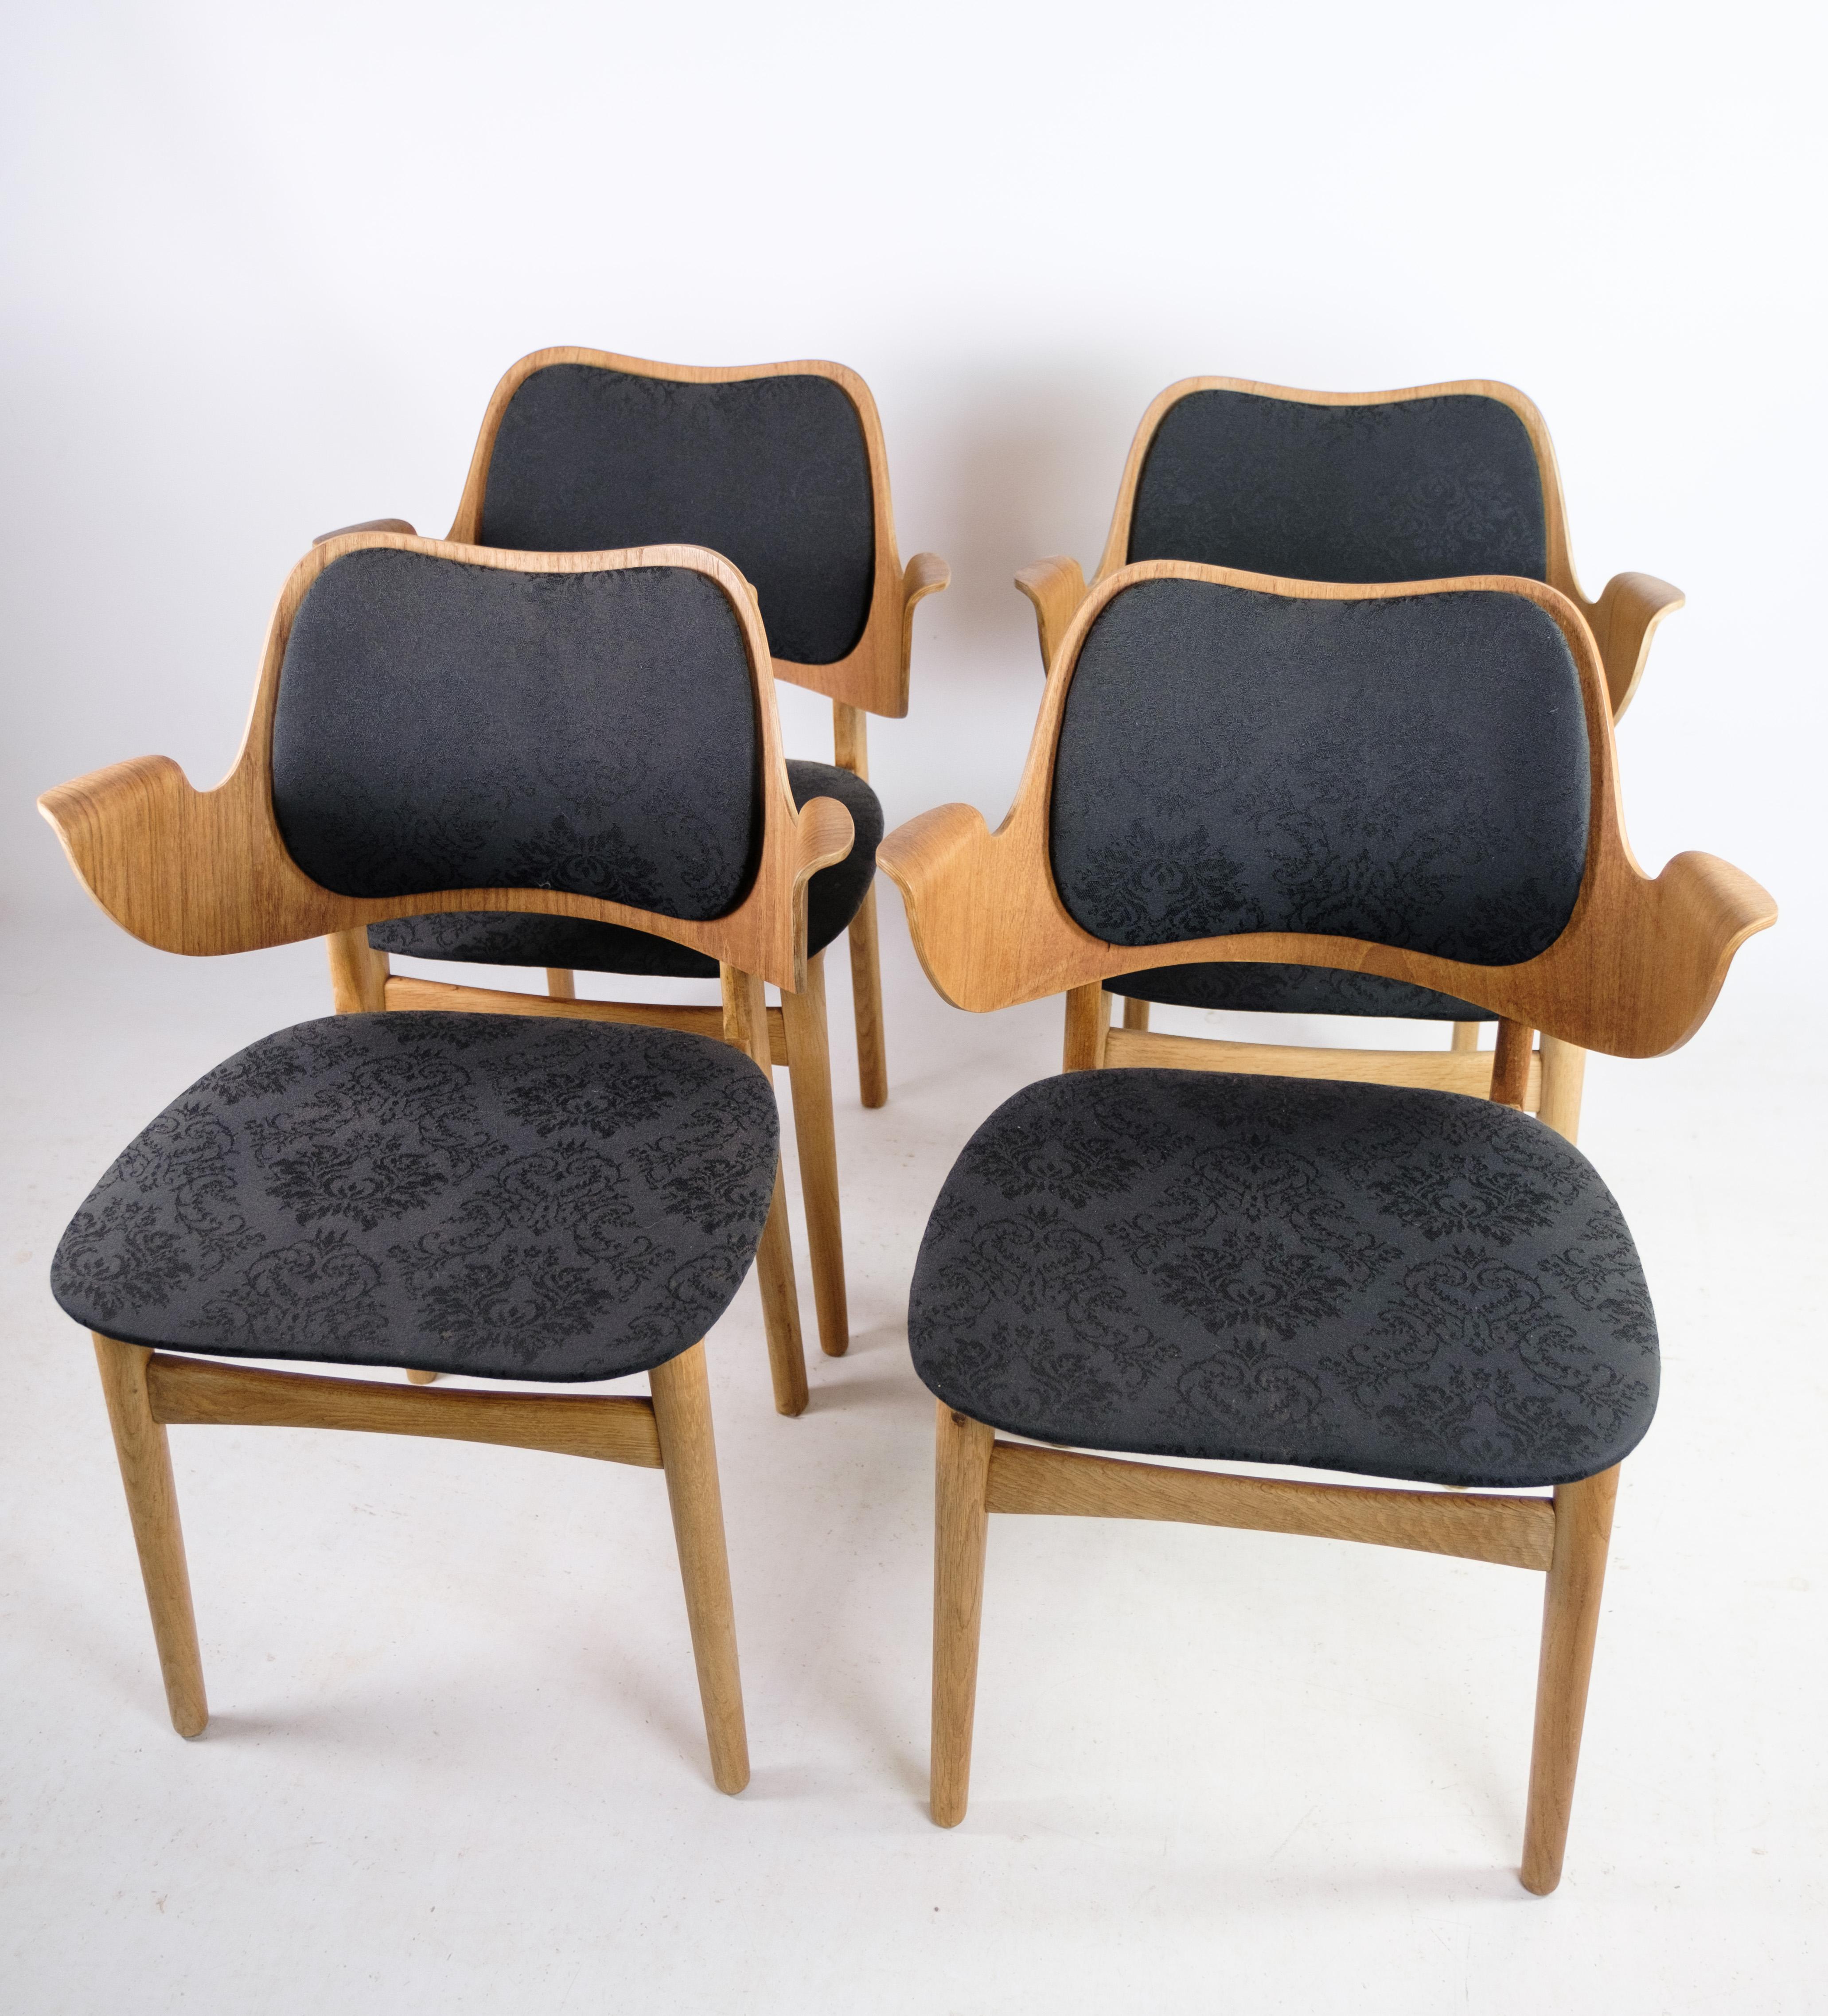 Cet ensemble de quatre fauteuils, modèle 107, conçu par Hans Olsen pour Bramin vers les années 1960, met en valeur l'esthétique emblématique du design danois de l'époque. Fabriquées à partir d'une combinaison de chêne et de teck, ces chaises